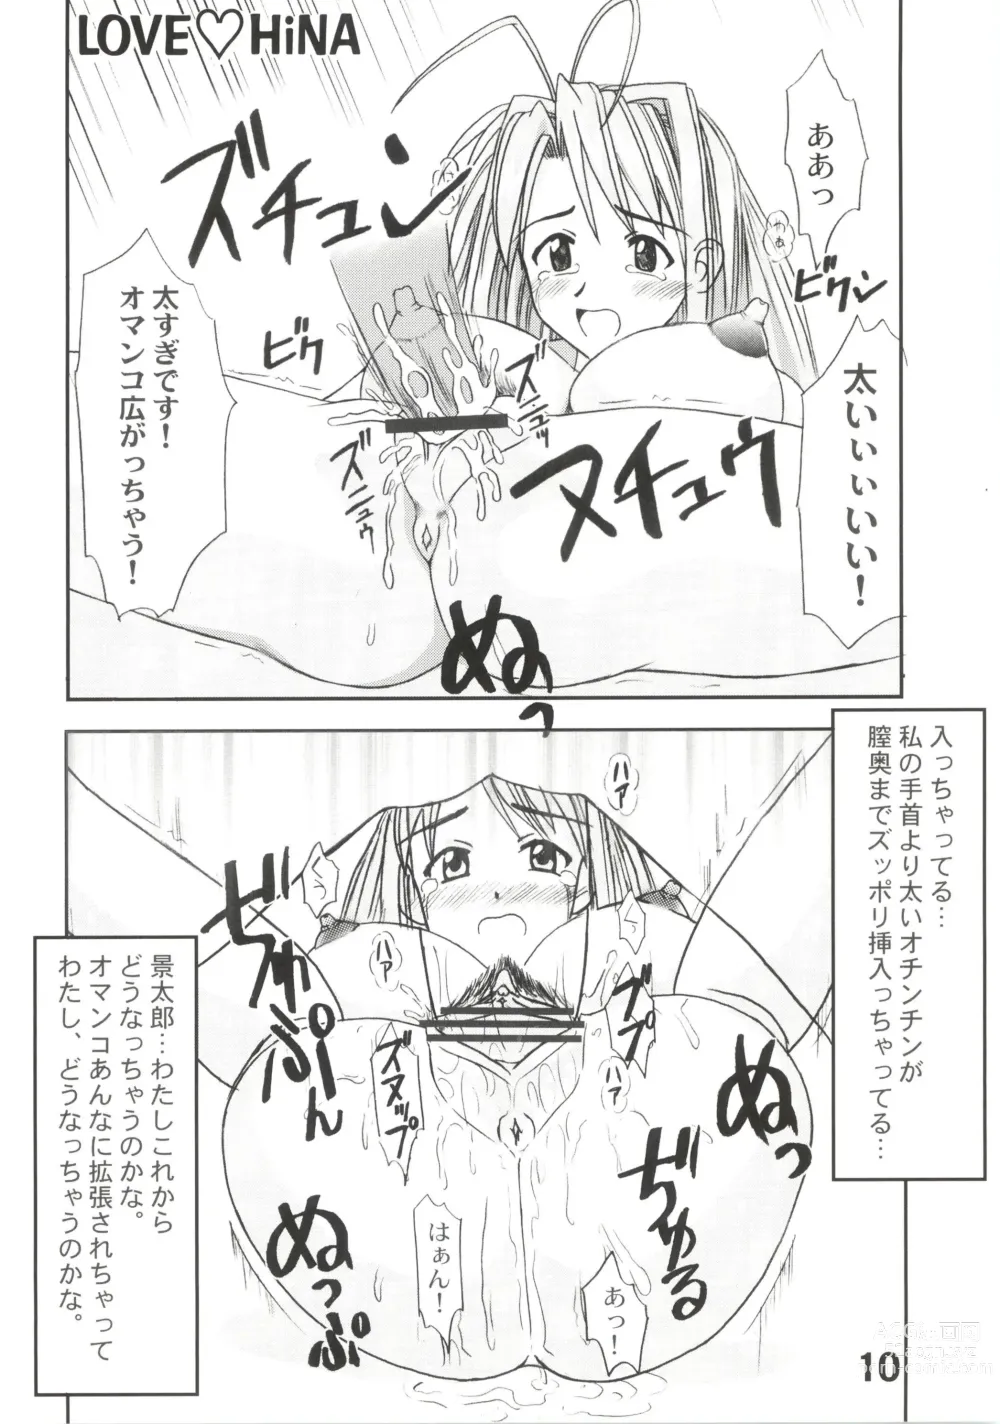 Page 10 of doujinshi Love Hina 8